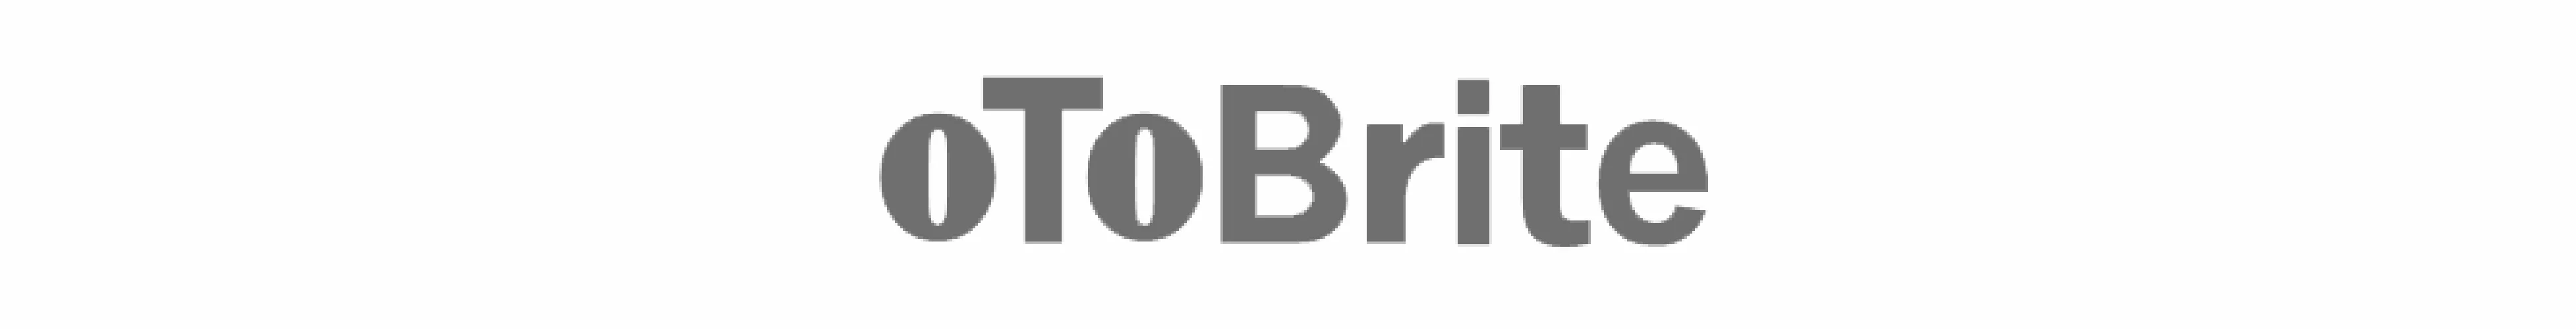 oToBrite_logo